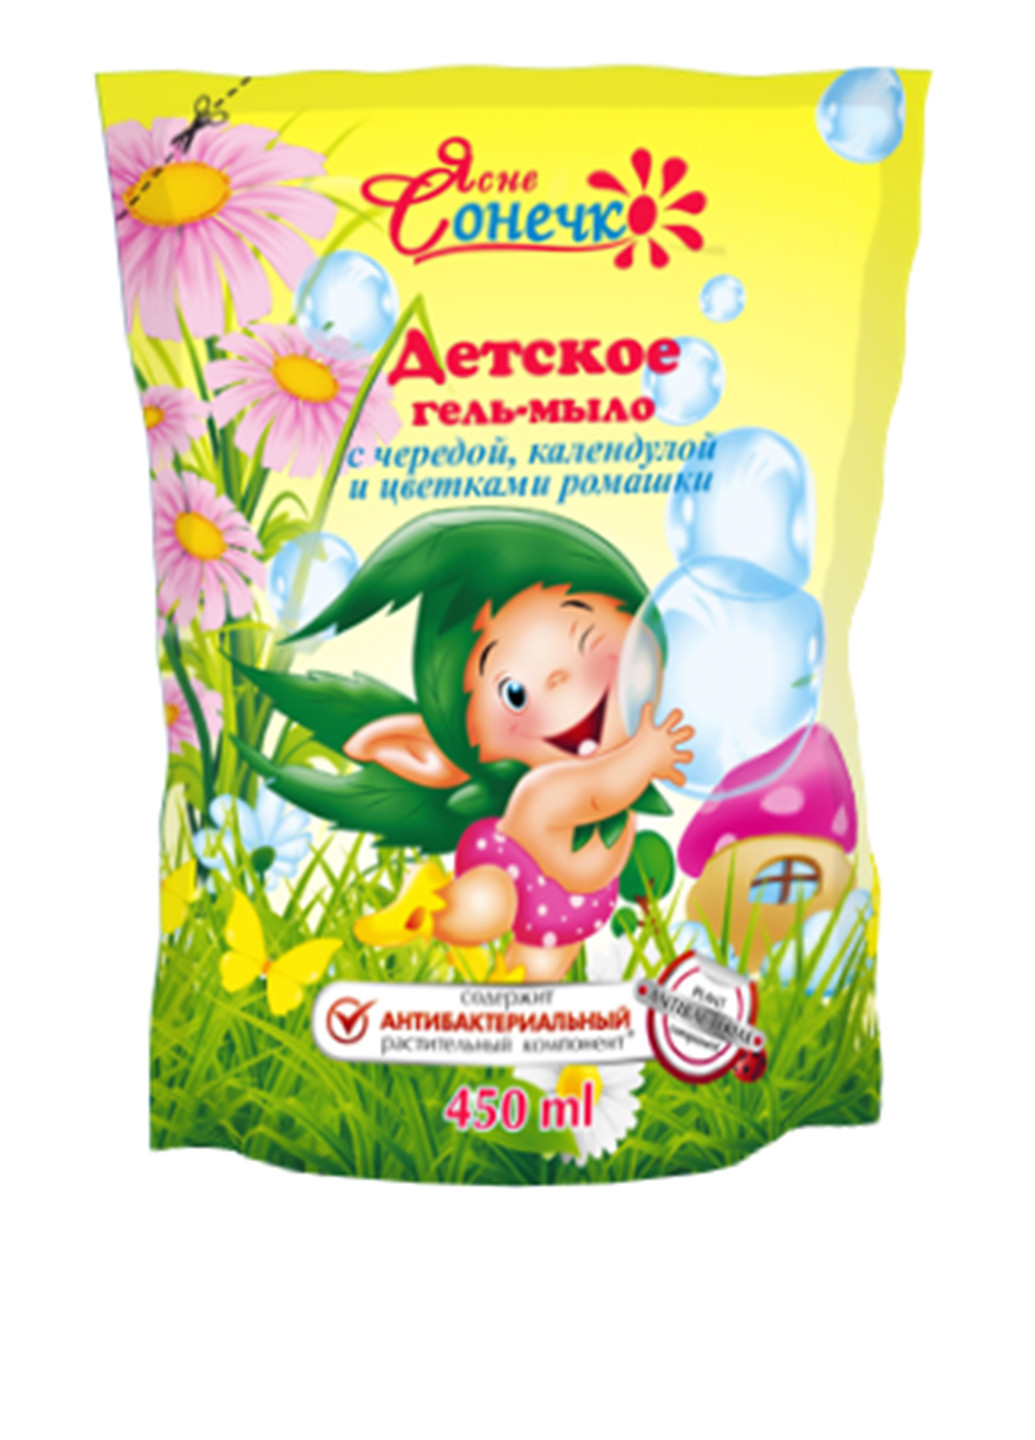 Гель-мыло для детей антибактериальное, 450 мл Ясне Сонечко (27109282)